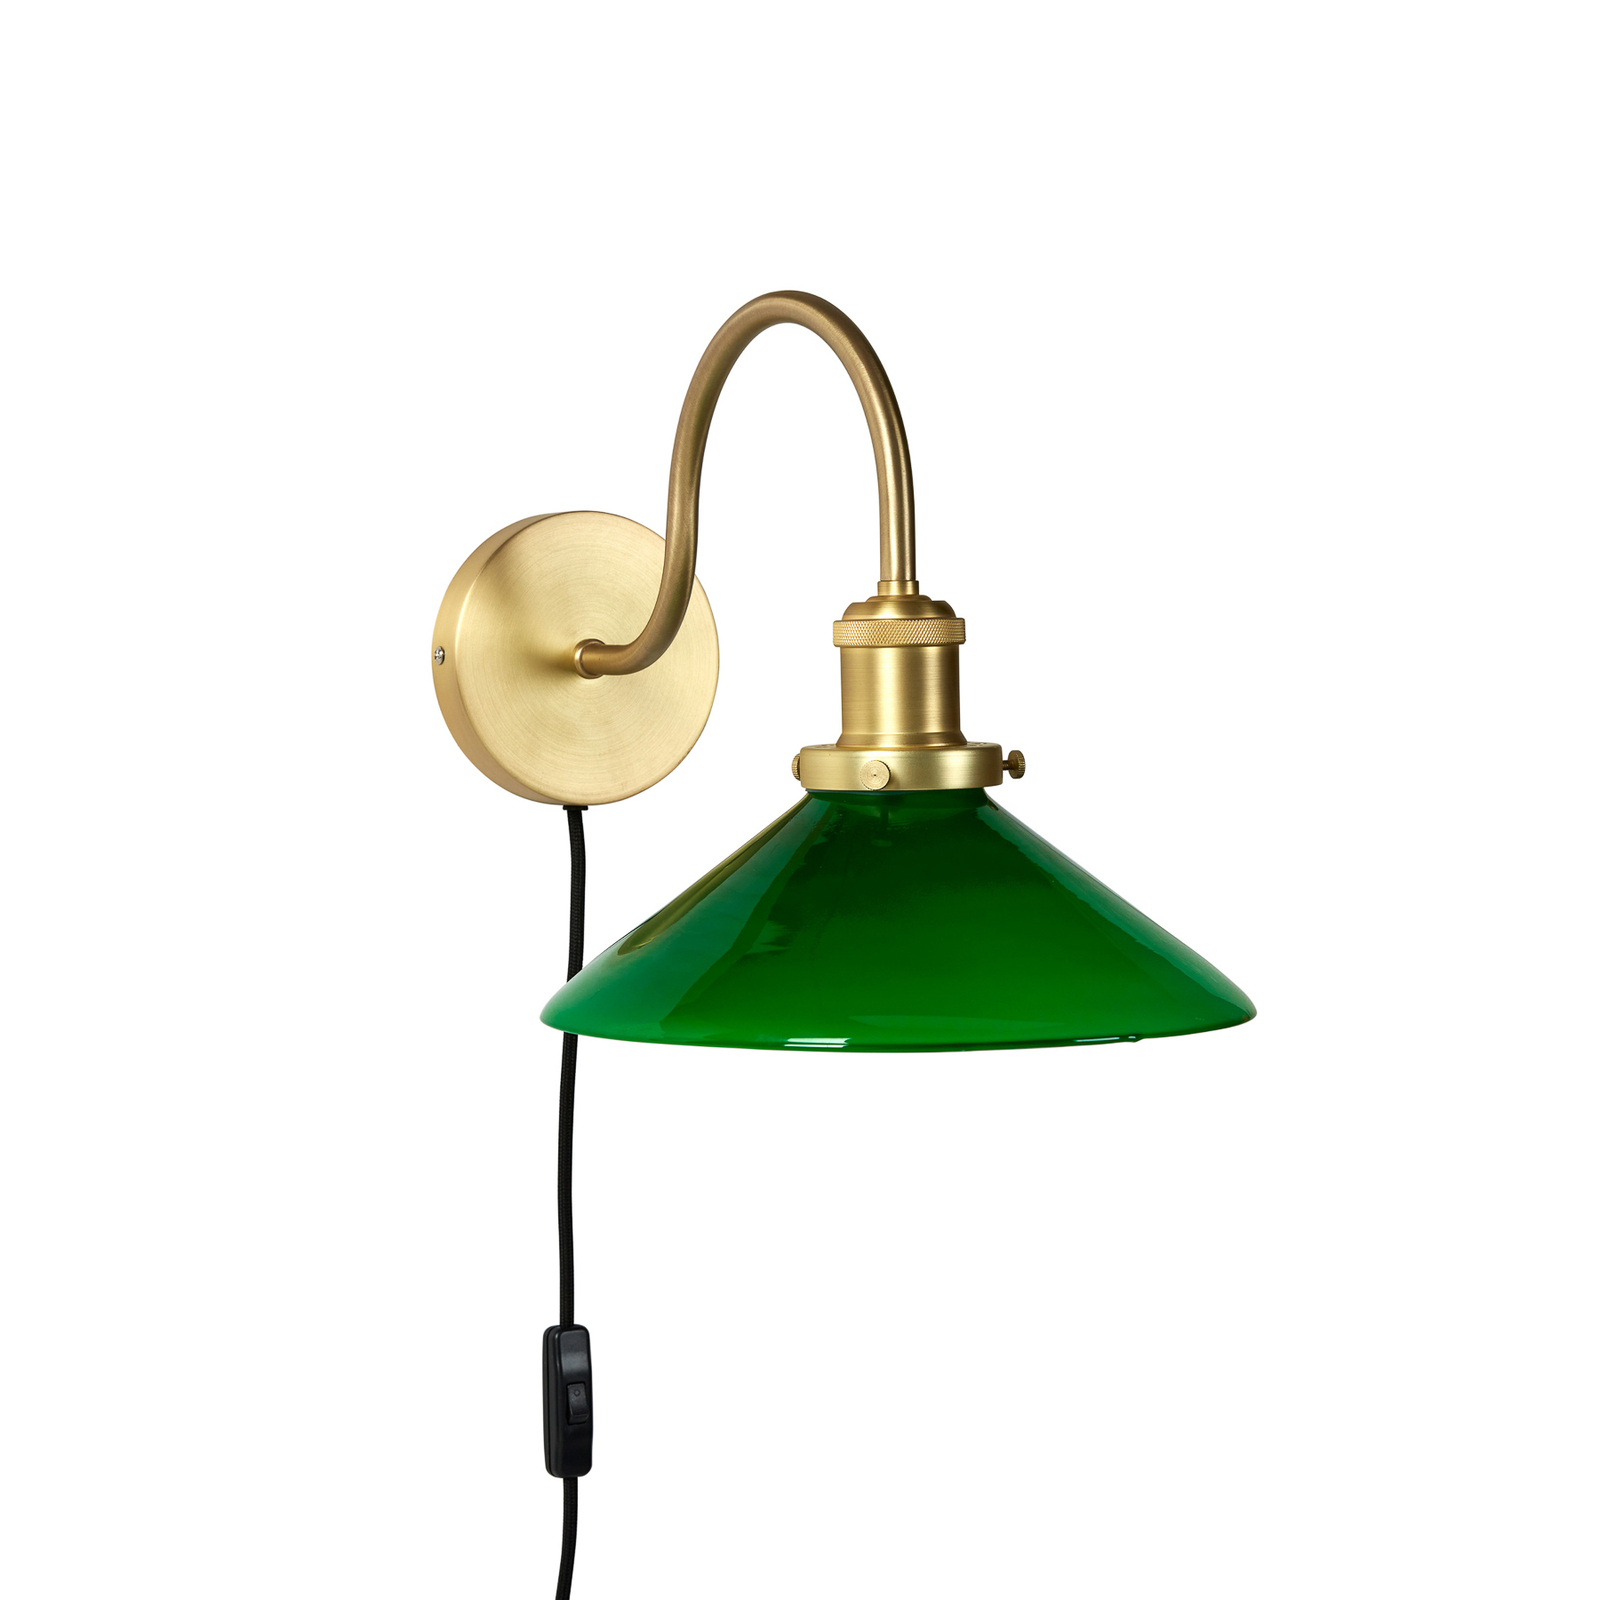 PR Home Axel wall light, brass-coloured, green glass shade